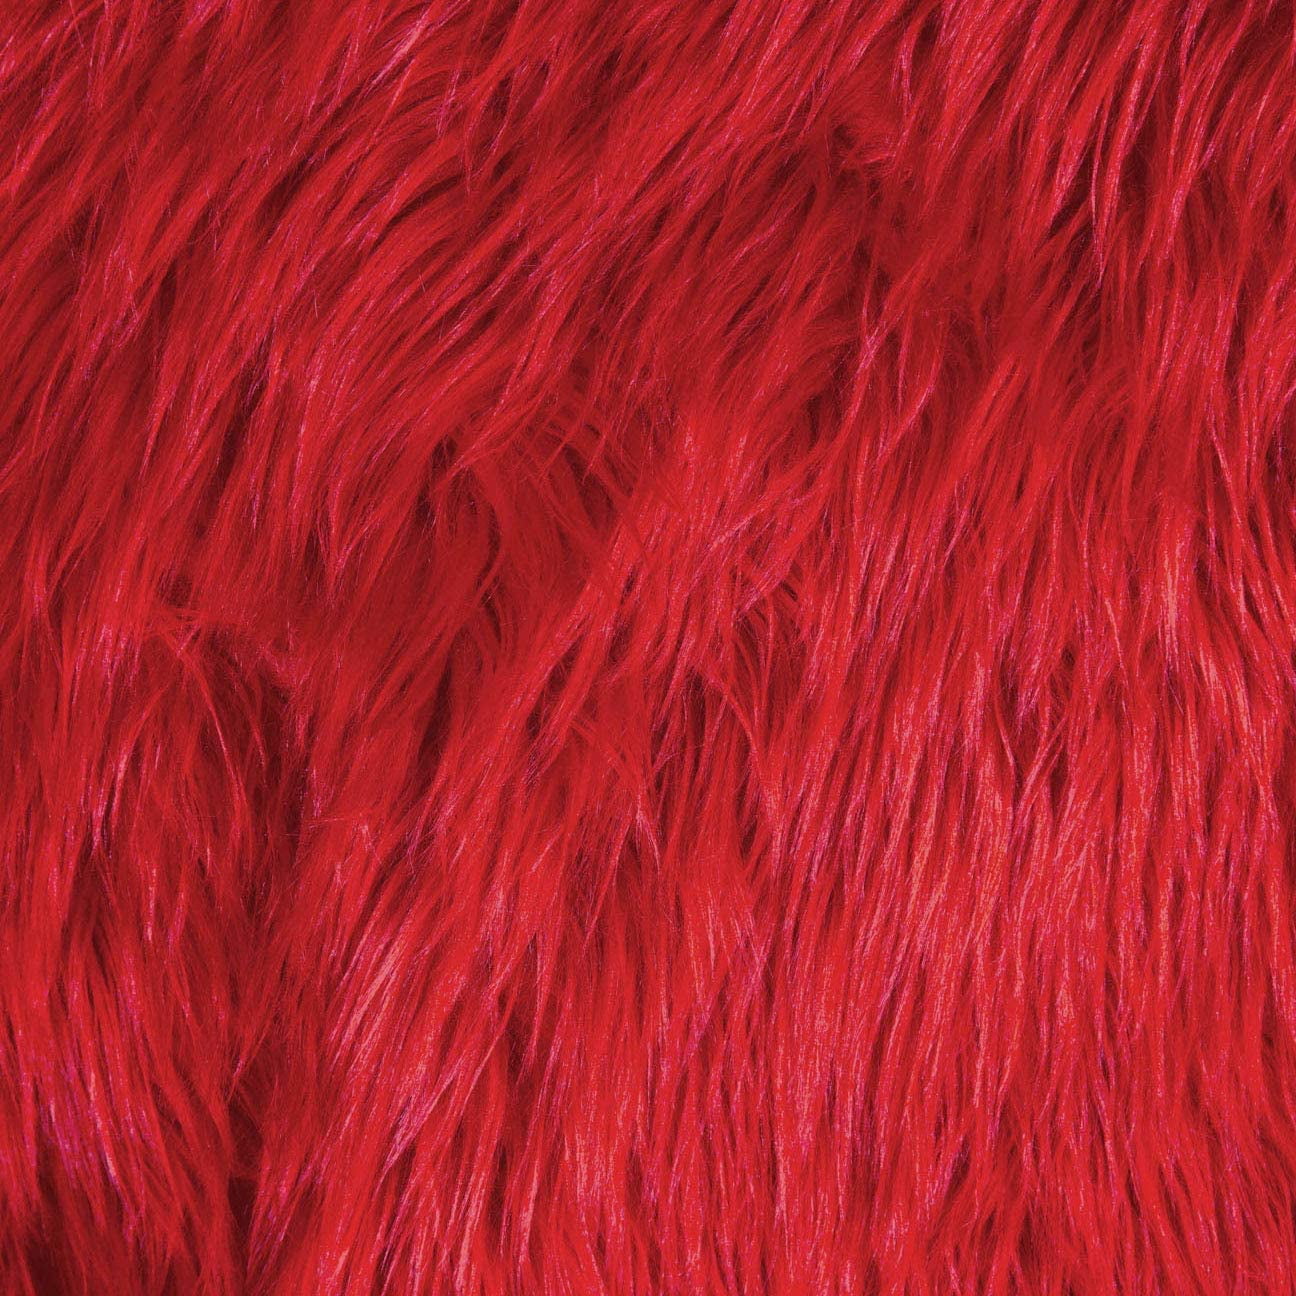 FabricLA Shaggy Faux Fur Fabric - 6 X 6 Inches Pre-Cut - Use Fake Fur  Fabric for DIY, Craft Fur Decoration, Fashion Accessory, Hobby - Burgundy